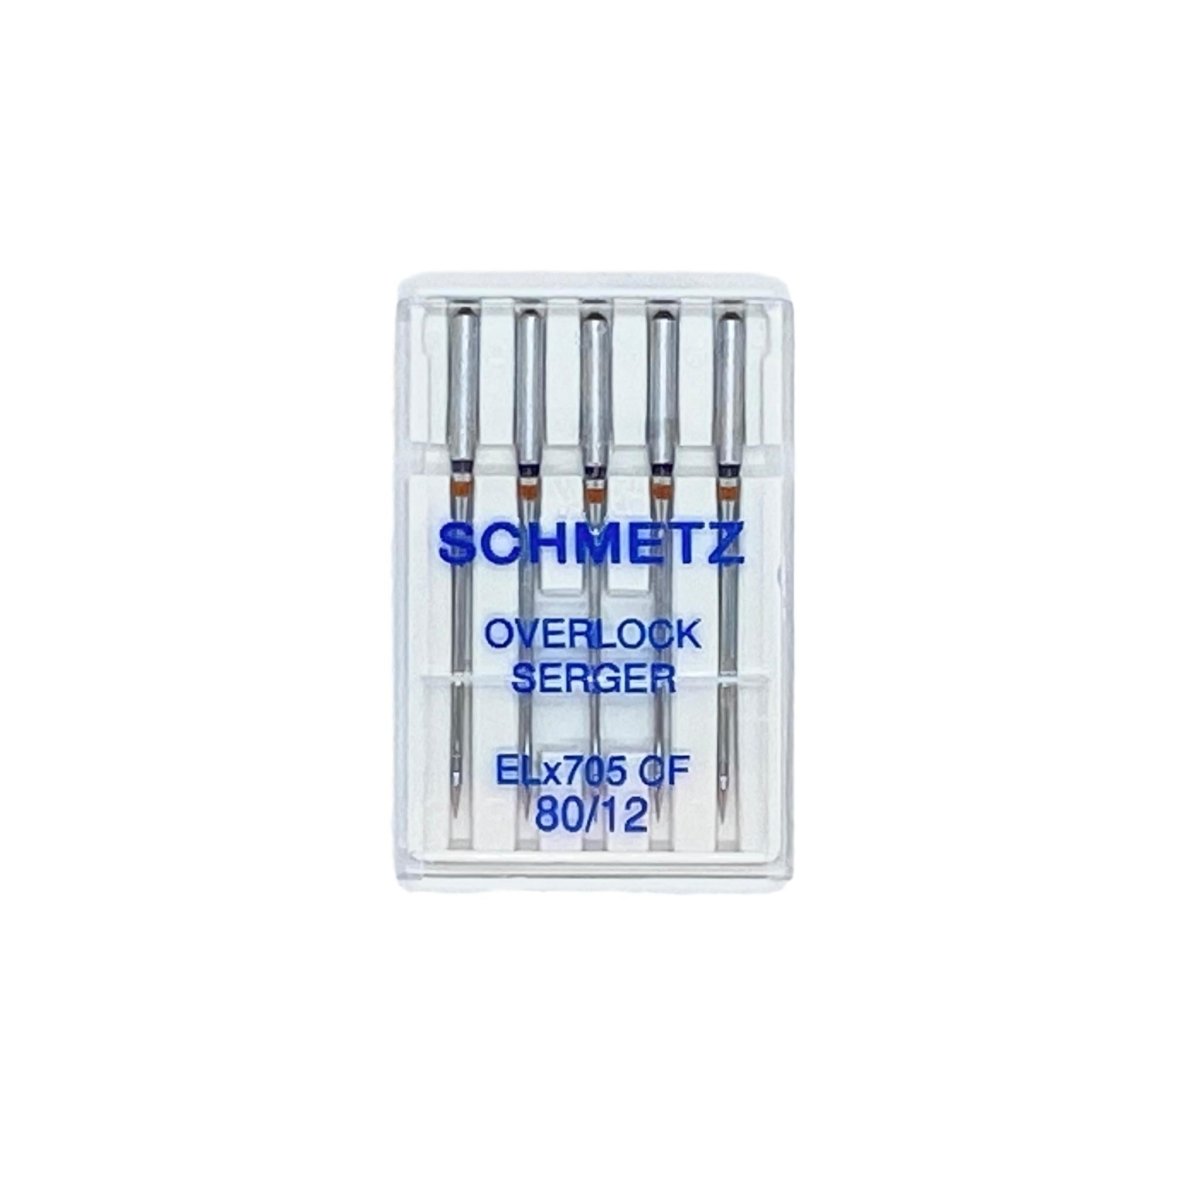 Schmetz - ELx705 round shank